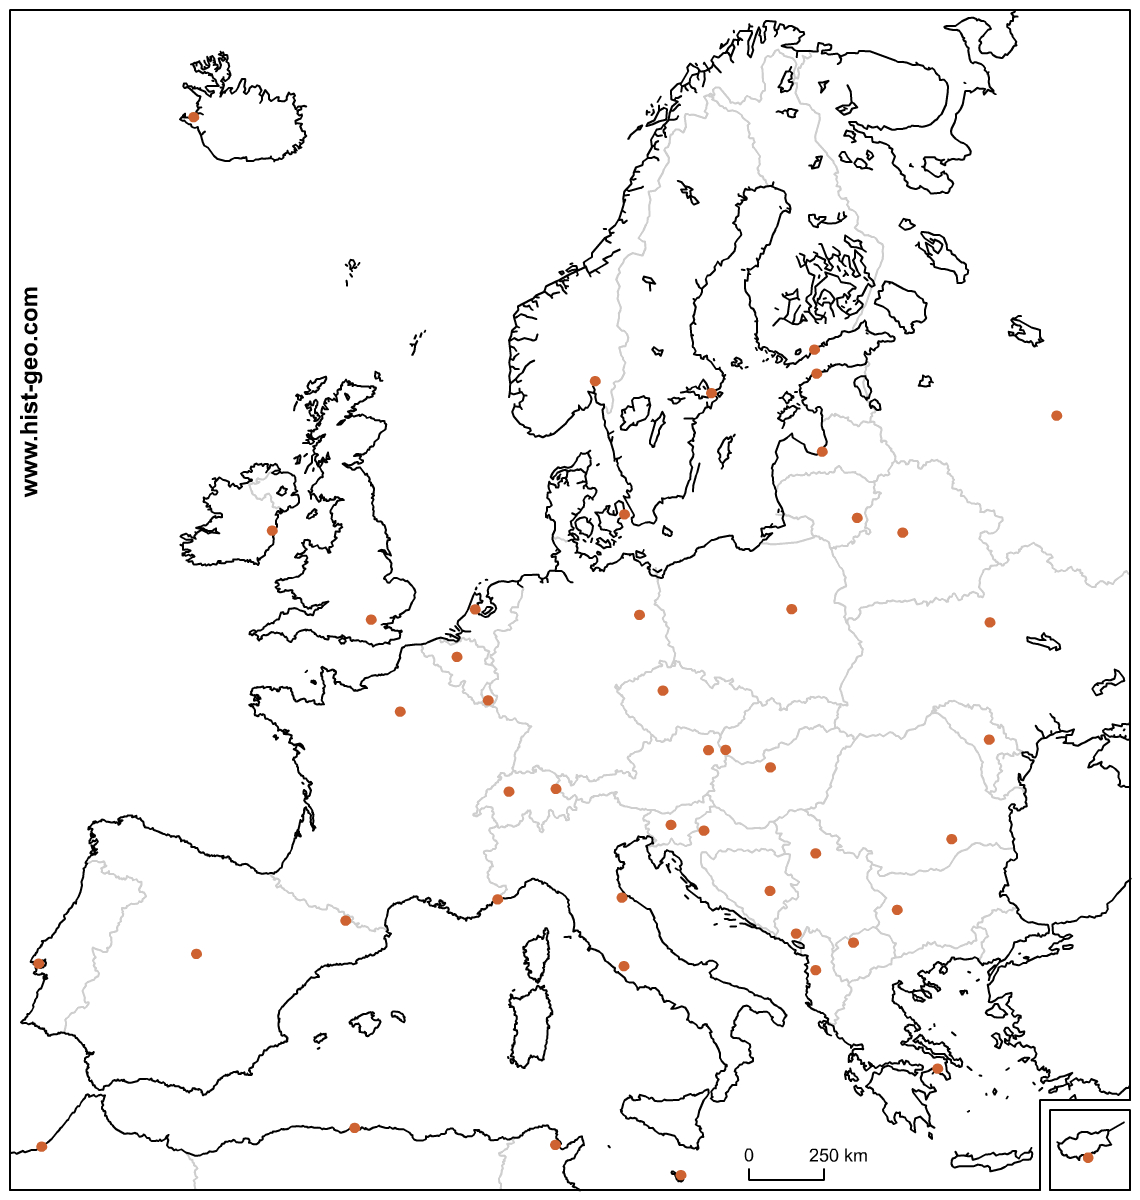 Fond De Carte Avec Les Pays Et Les Capitales Européennes (Ue) dedans Carte Des Pays De L Europe 